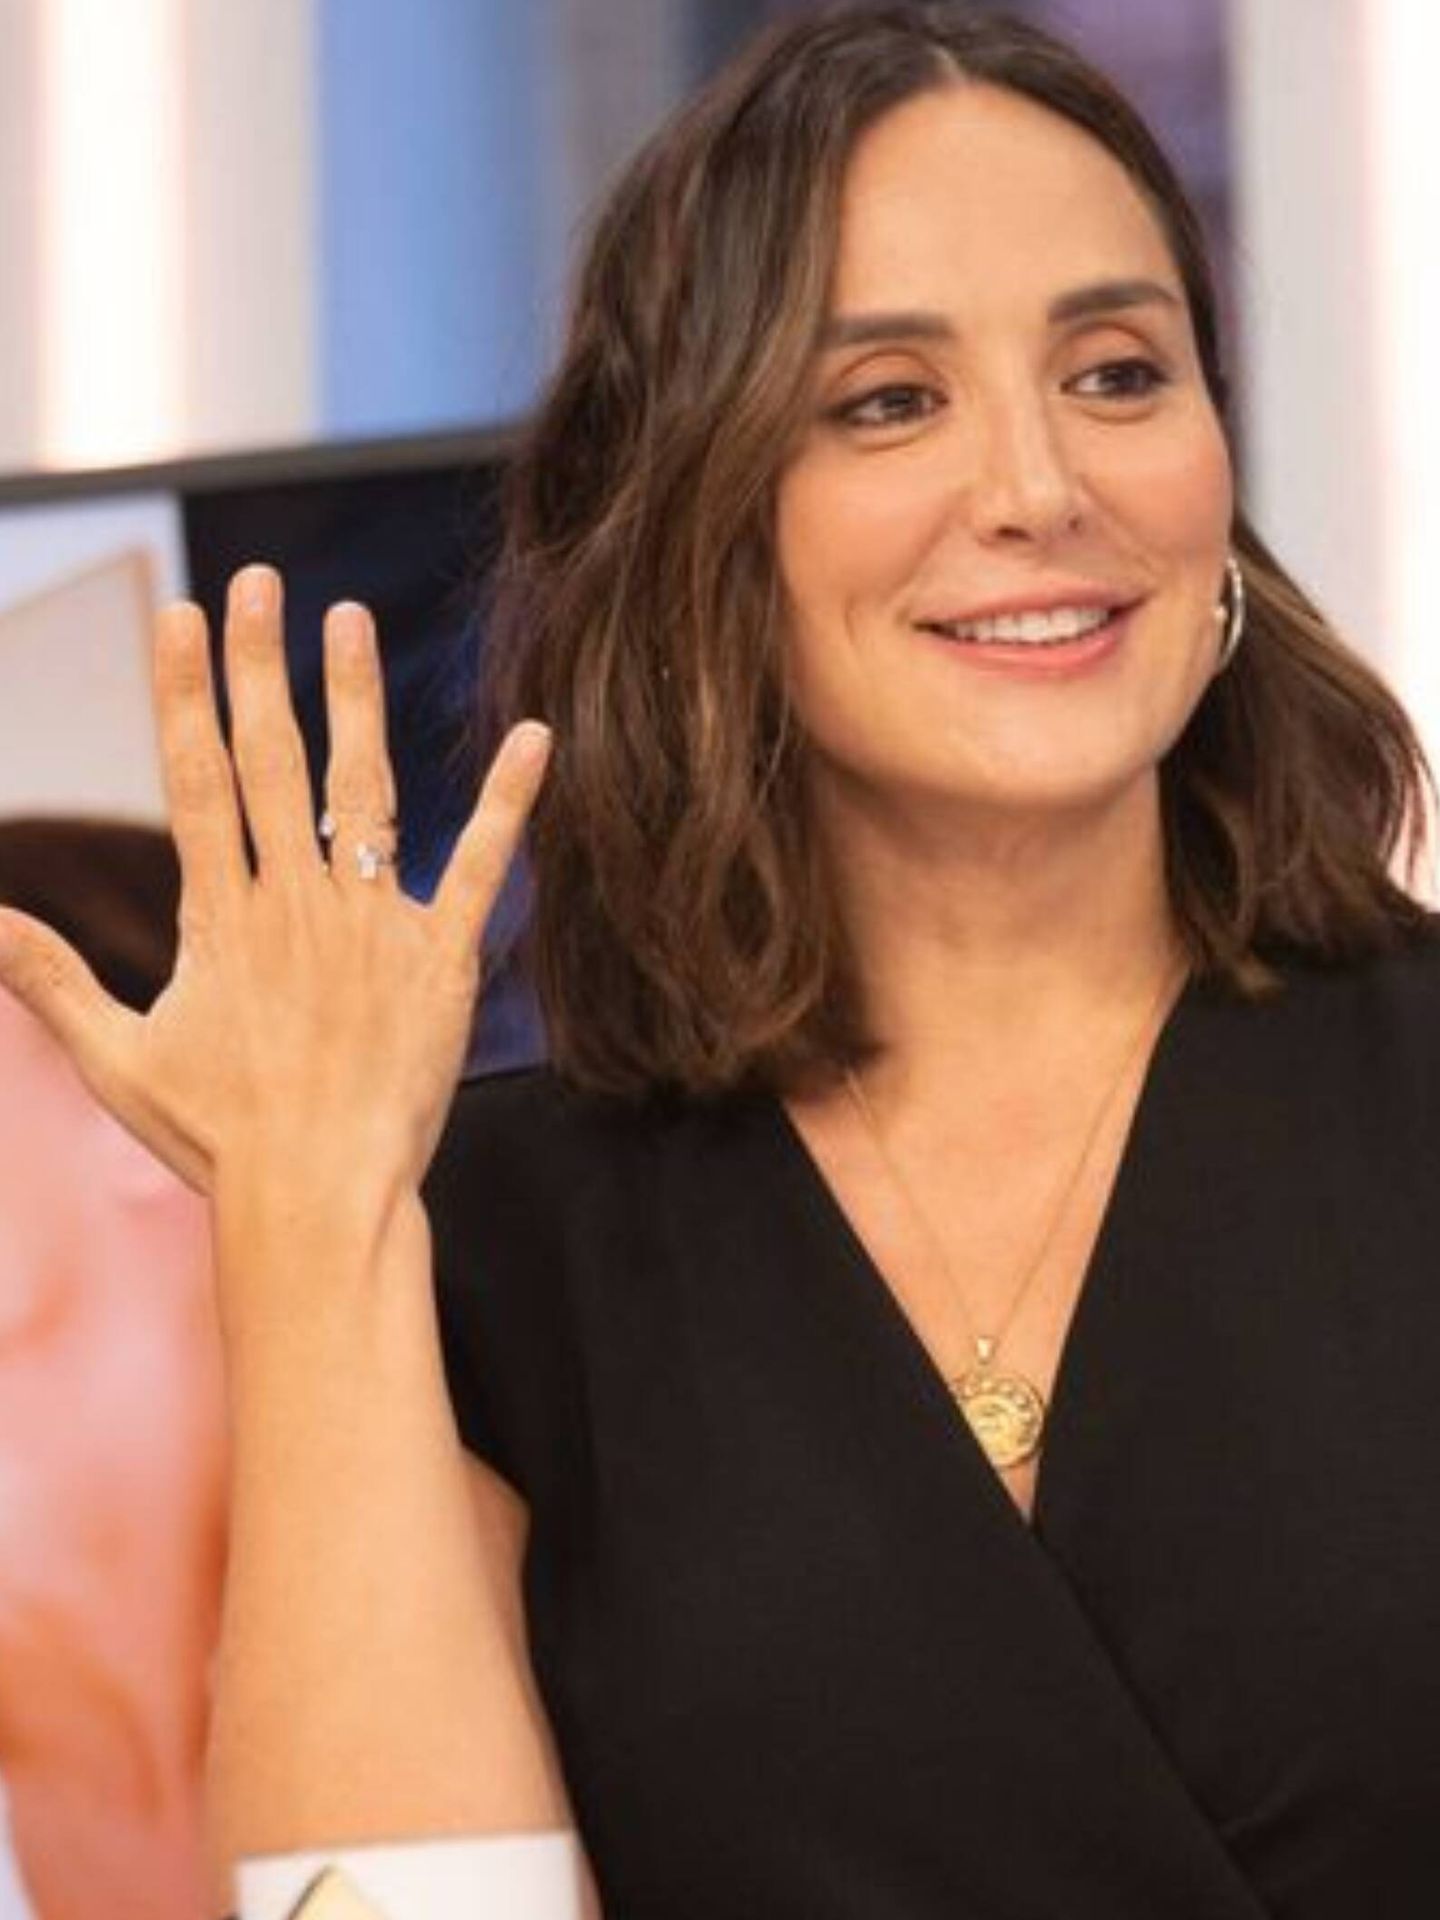 Tamara Falcó, mostrando su anillo de compromiso. ('El hormiguero'/Carlos López)'El hormiguero'/Carlos López)